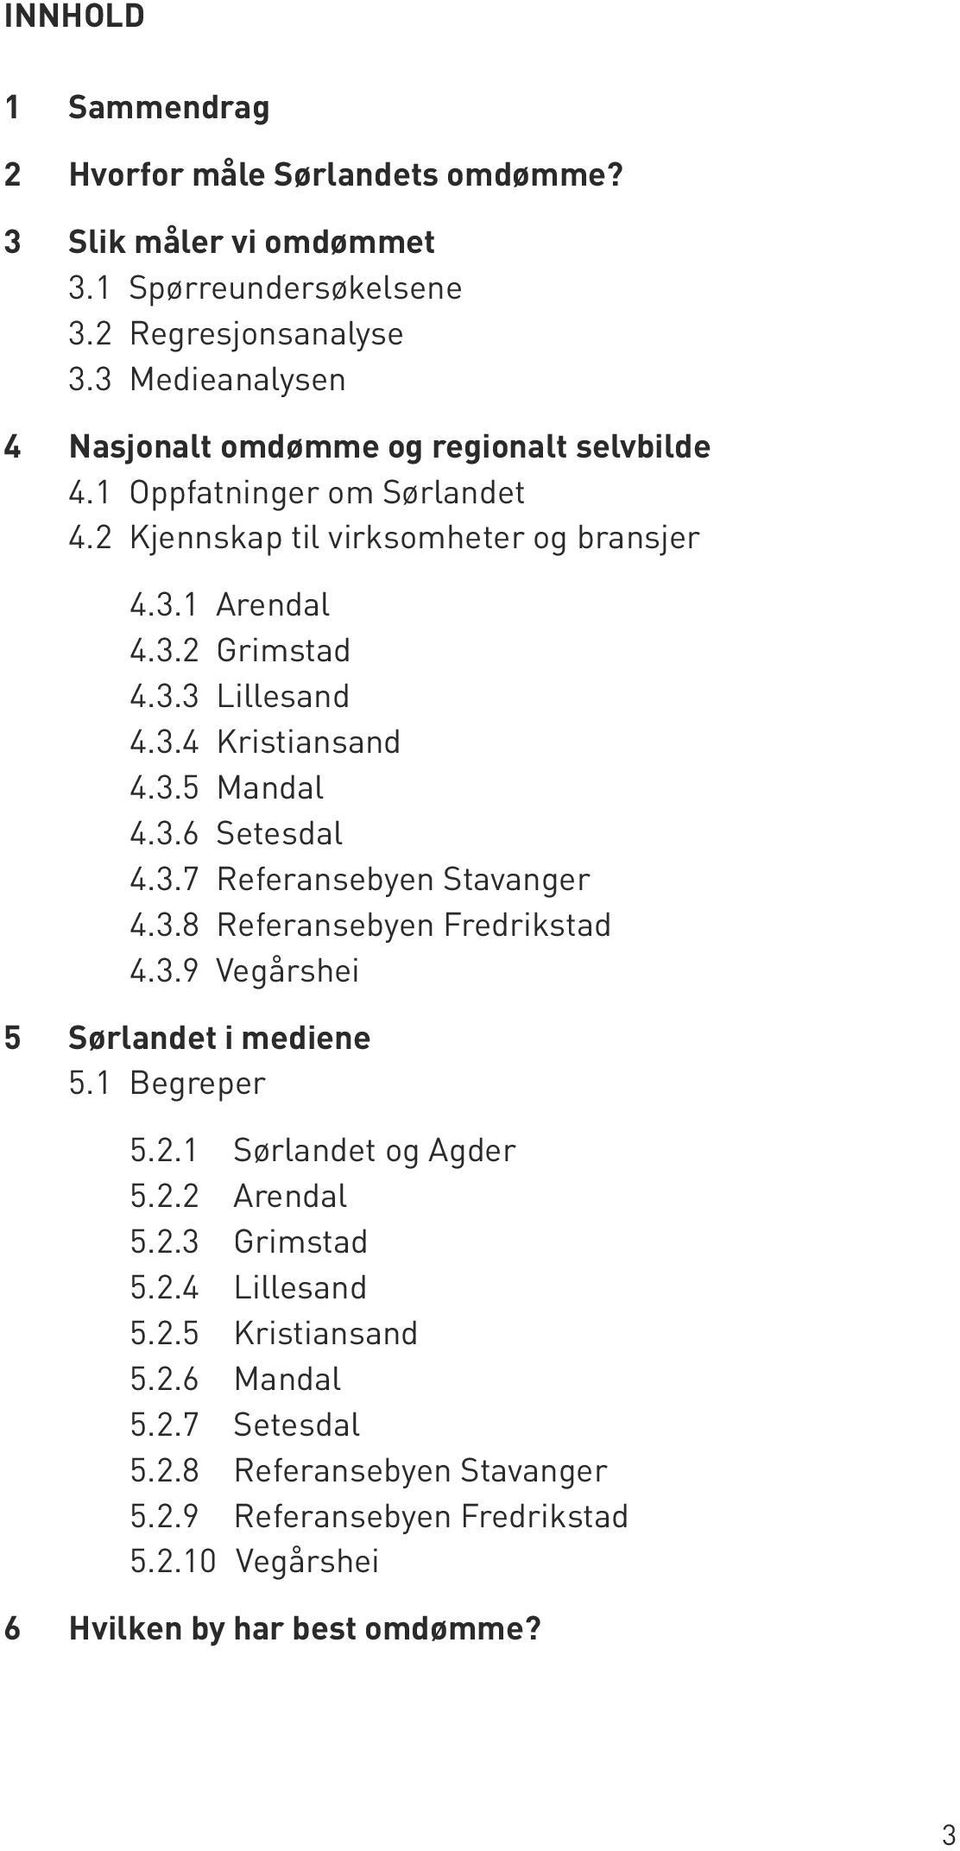 . Lillesand 4..4 Kristiansand 4..5 Mandal 4..6 Setesdal 4..7 Referansebyen Stavanger 4..8 Referansebyen Fredrikstad 4..9 Vegårshei 5 Sørlandet i mediene 5.1 Begreper 5.